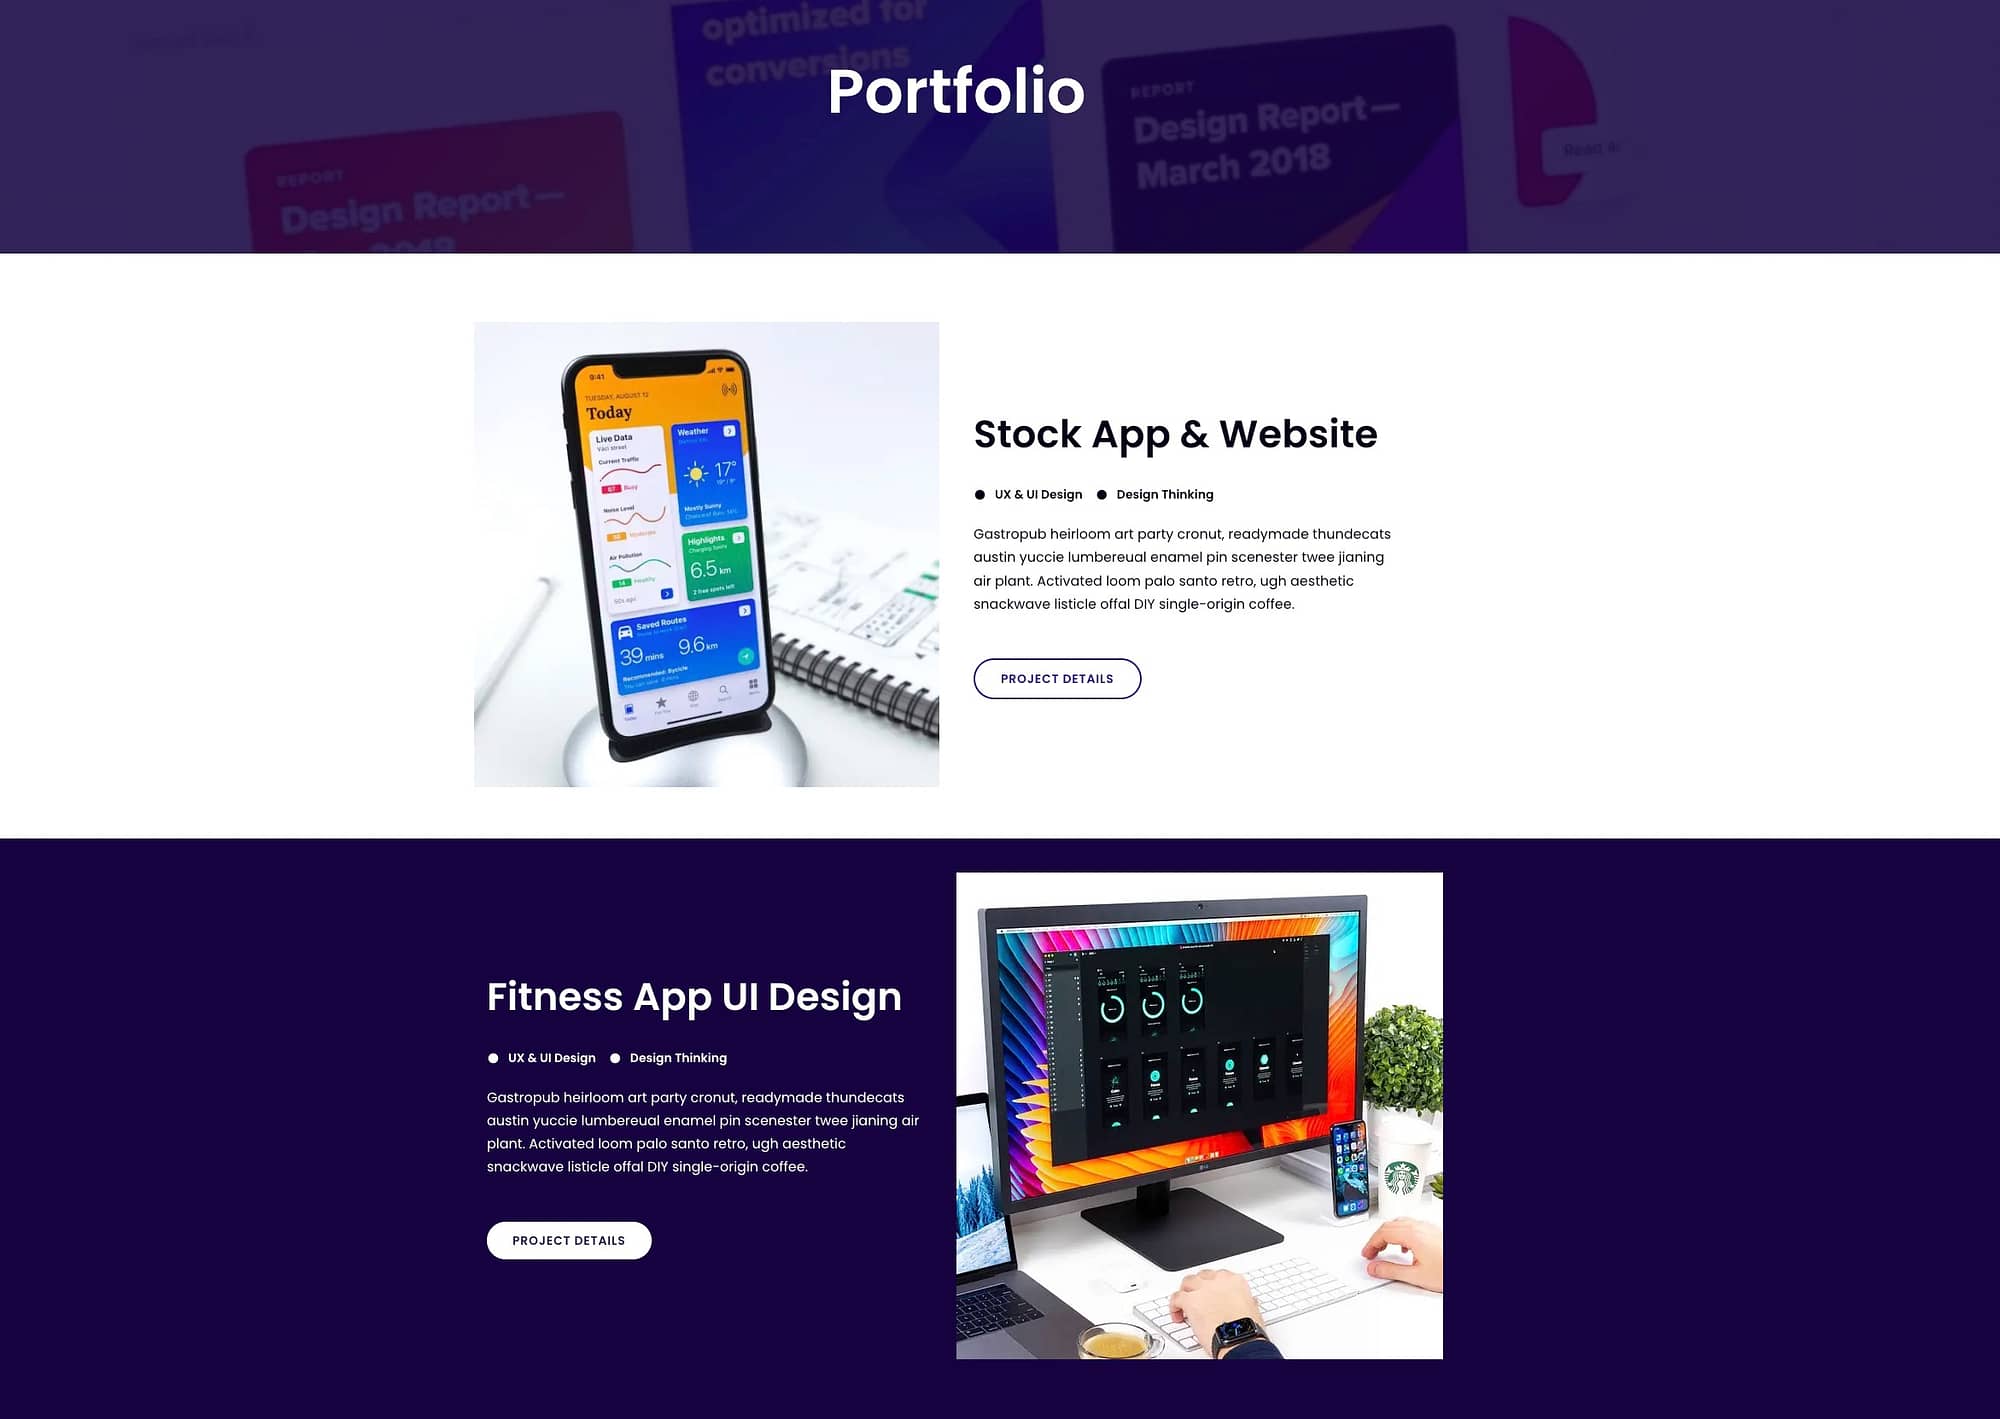 portfolio featuring development work